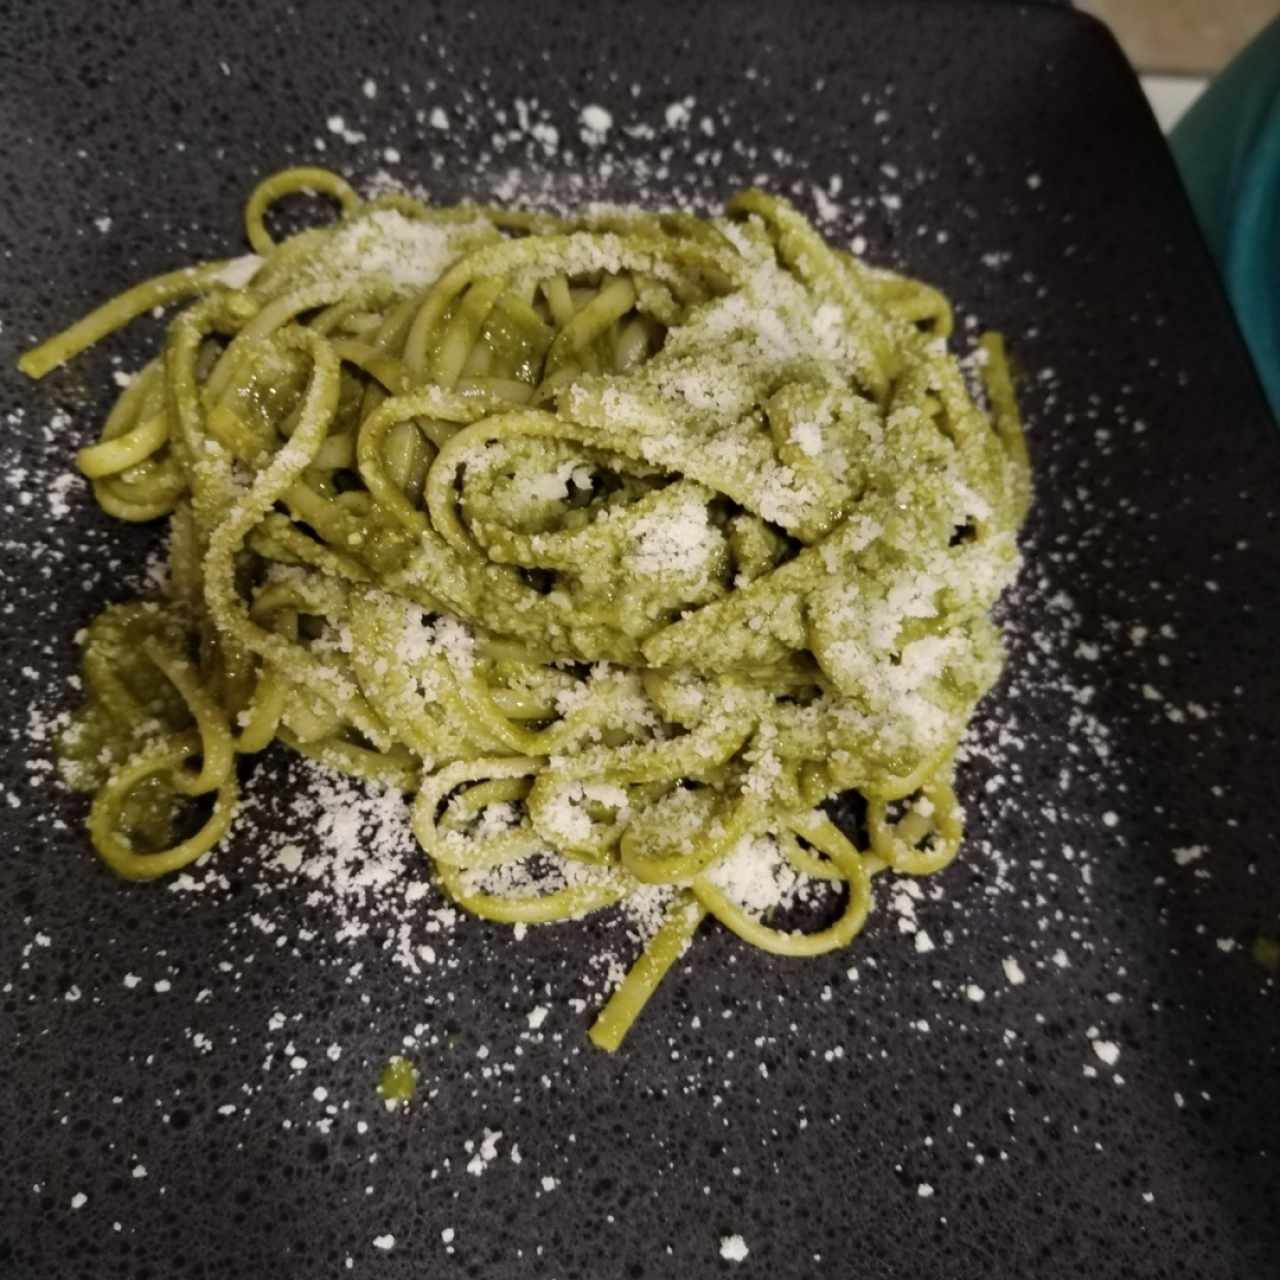 Fetuccini al Pesto